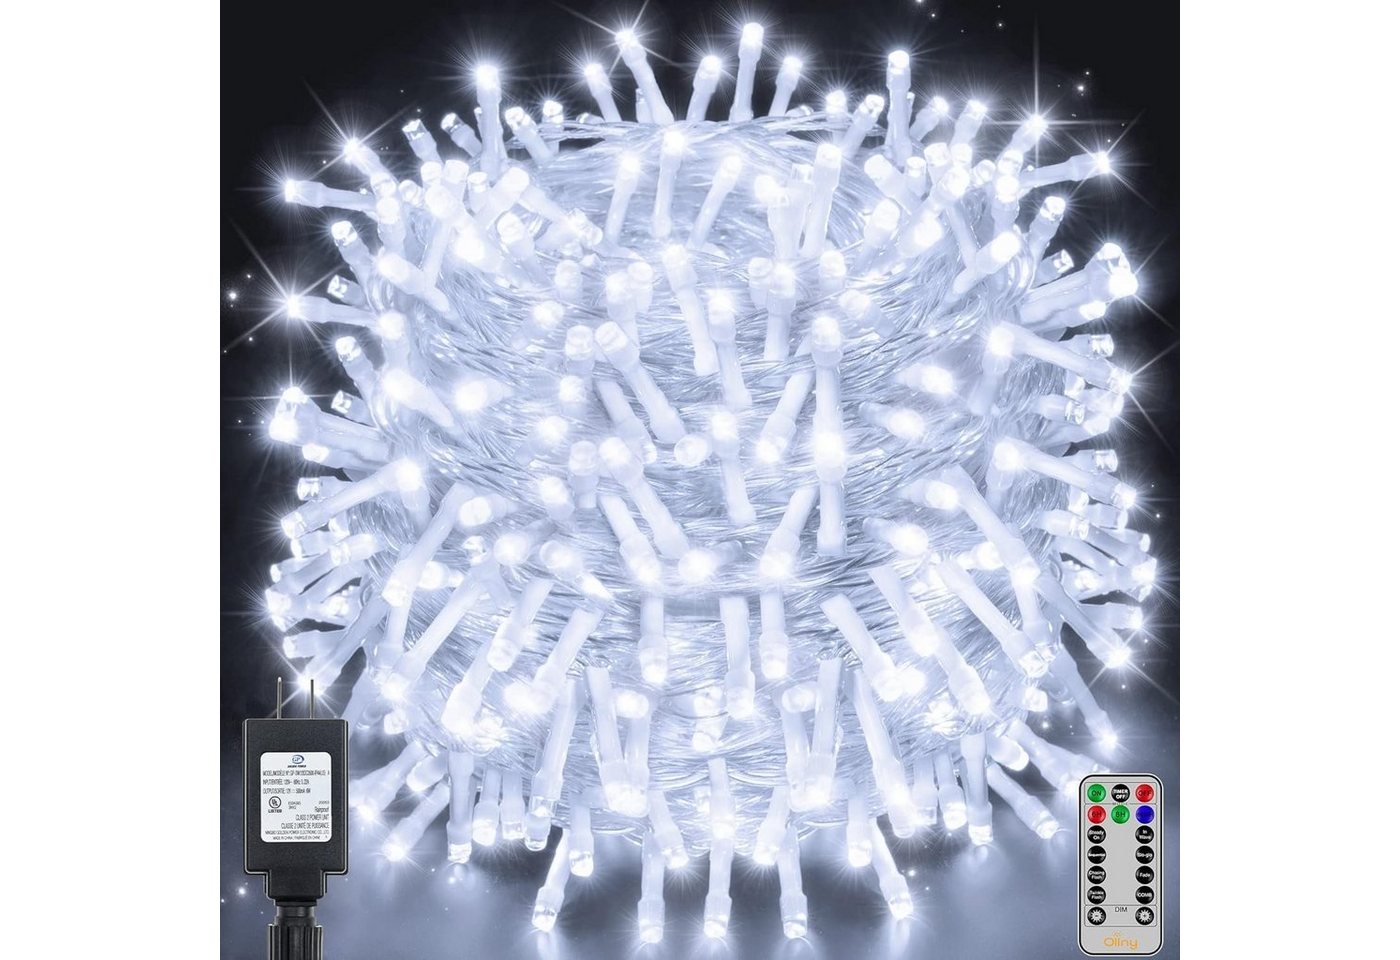 Diyarts LED-Lichterkette, 600-flammig, 60m LED vielseitige Beleuchtung, 8 Modi, 4 Helligkeitsstufen. von Diyarts